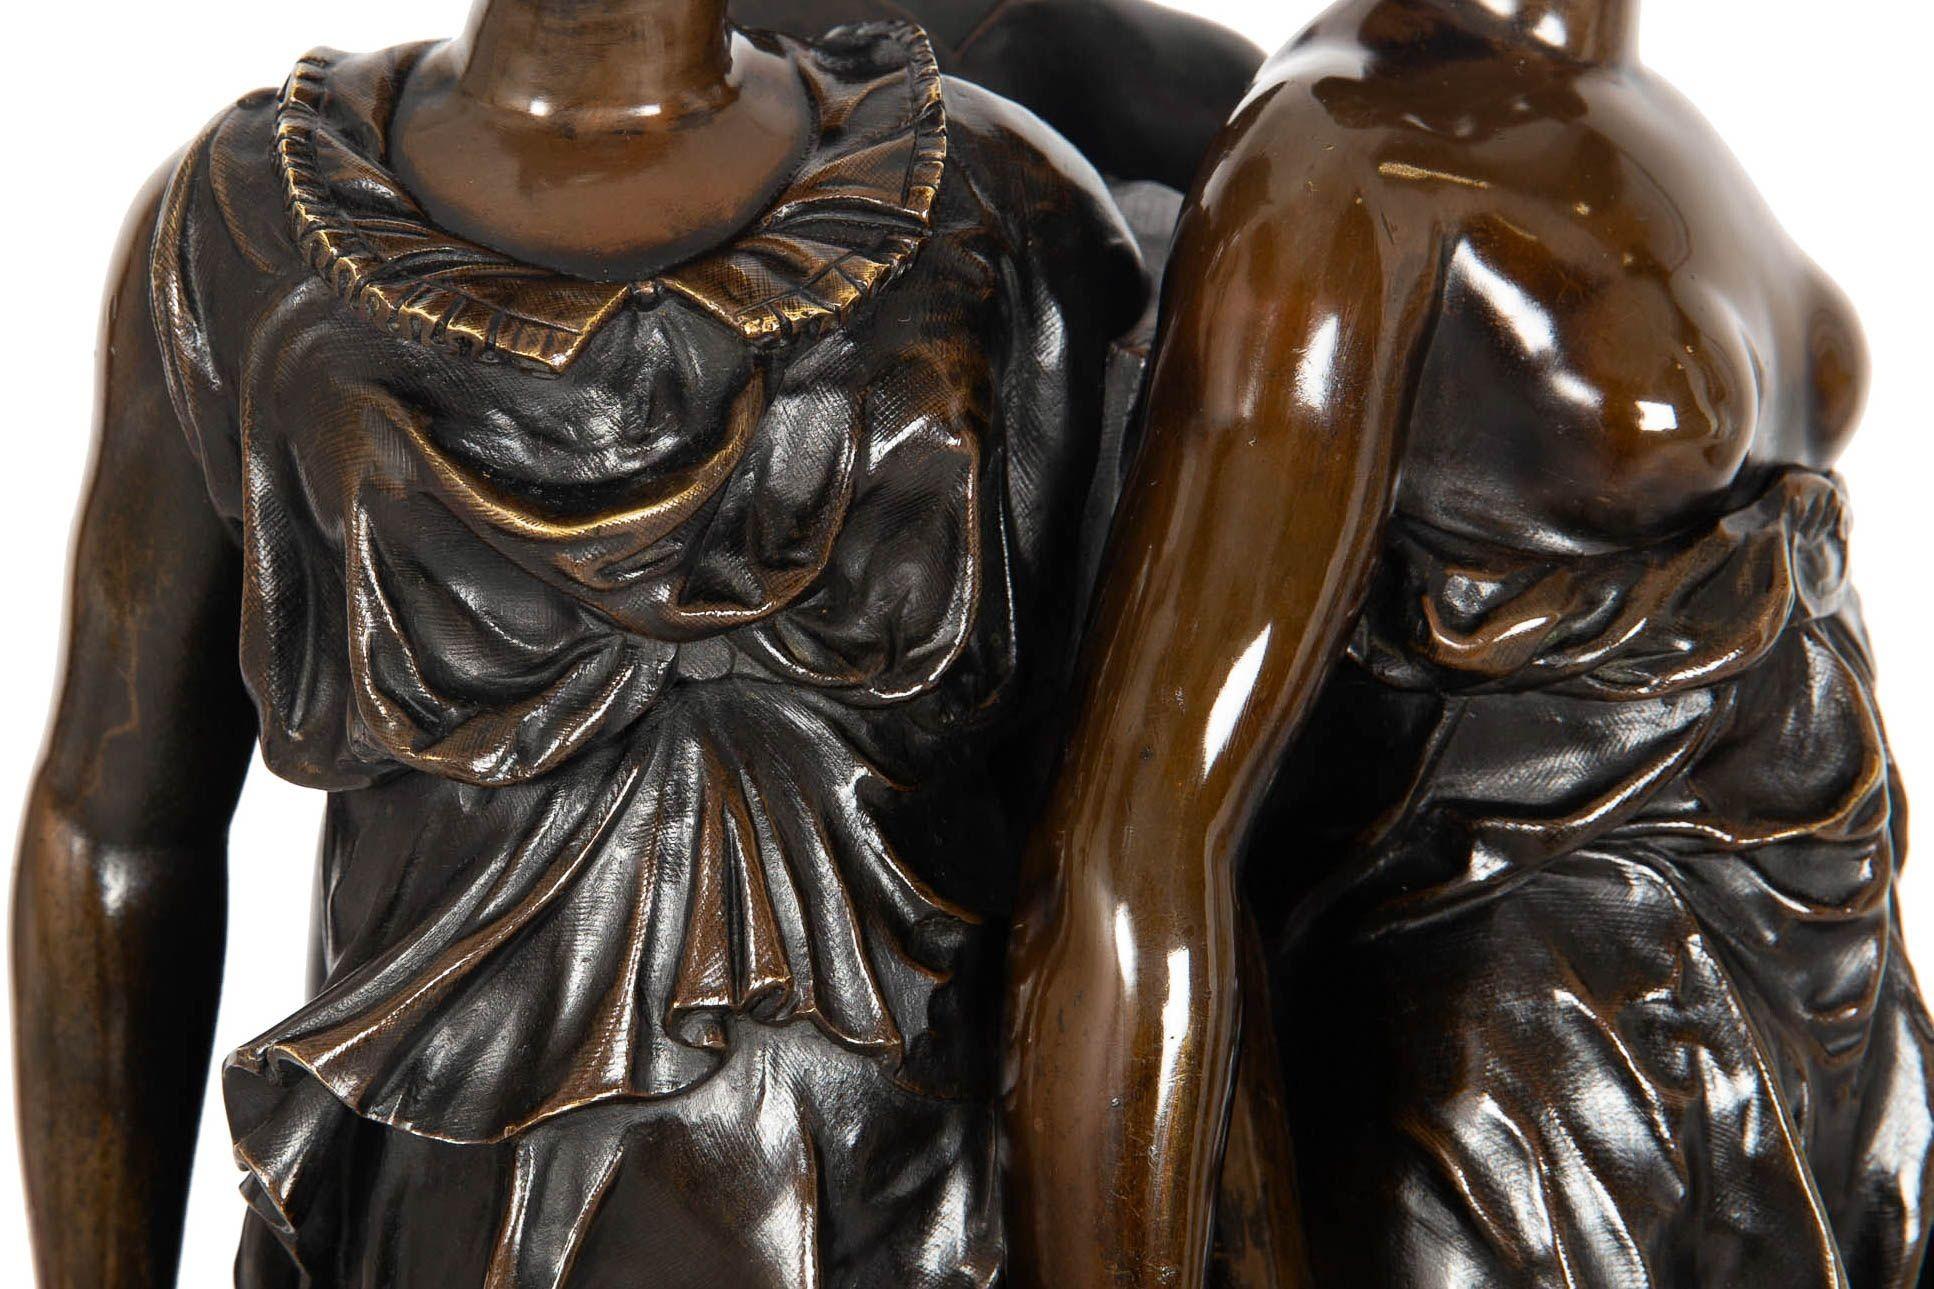 French Antique Bronze Sculpture “Three Graces” after Germain Pilon For Sale 3